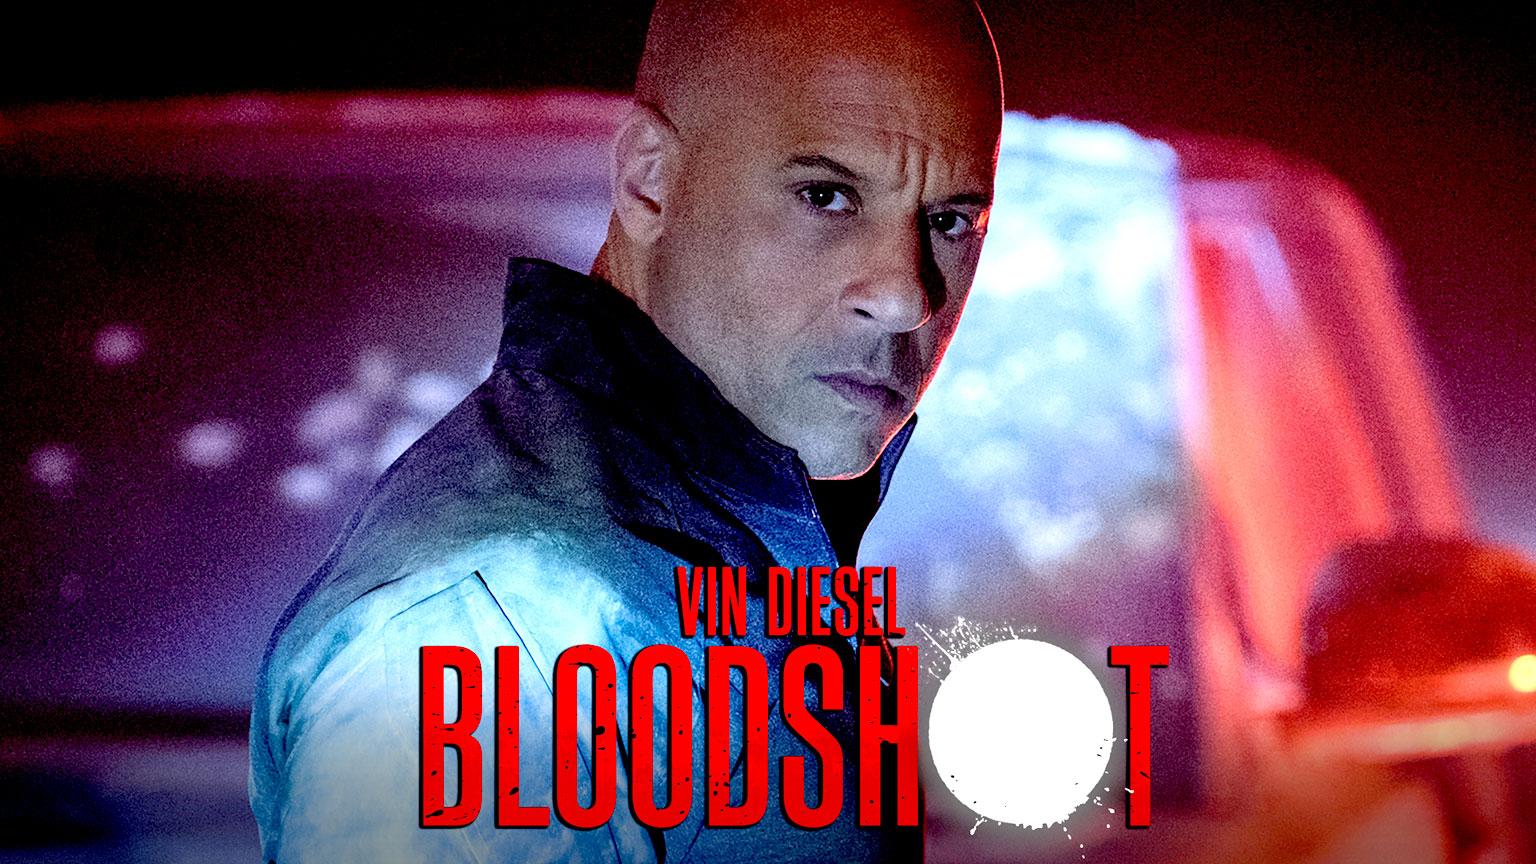 Blooshot Vin Diesel Artikelbild Filmstart 2020